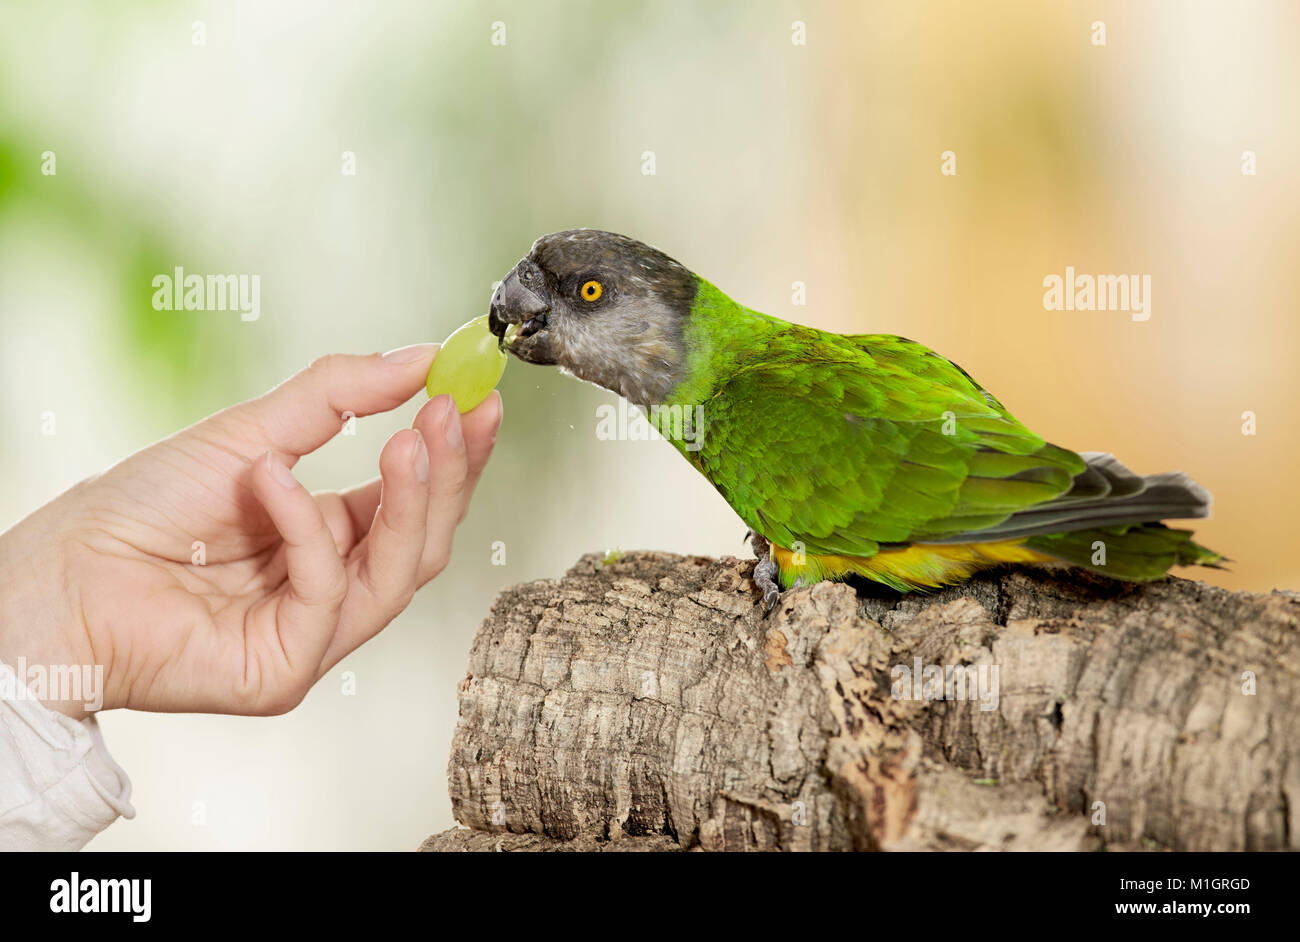 Sénégal (Poicephalus senegalus perroquet). Des profils sur la main, manger un raisin. Allemagne Banque D'Images